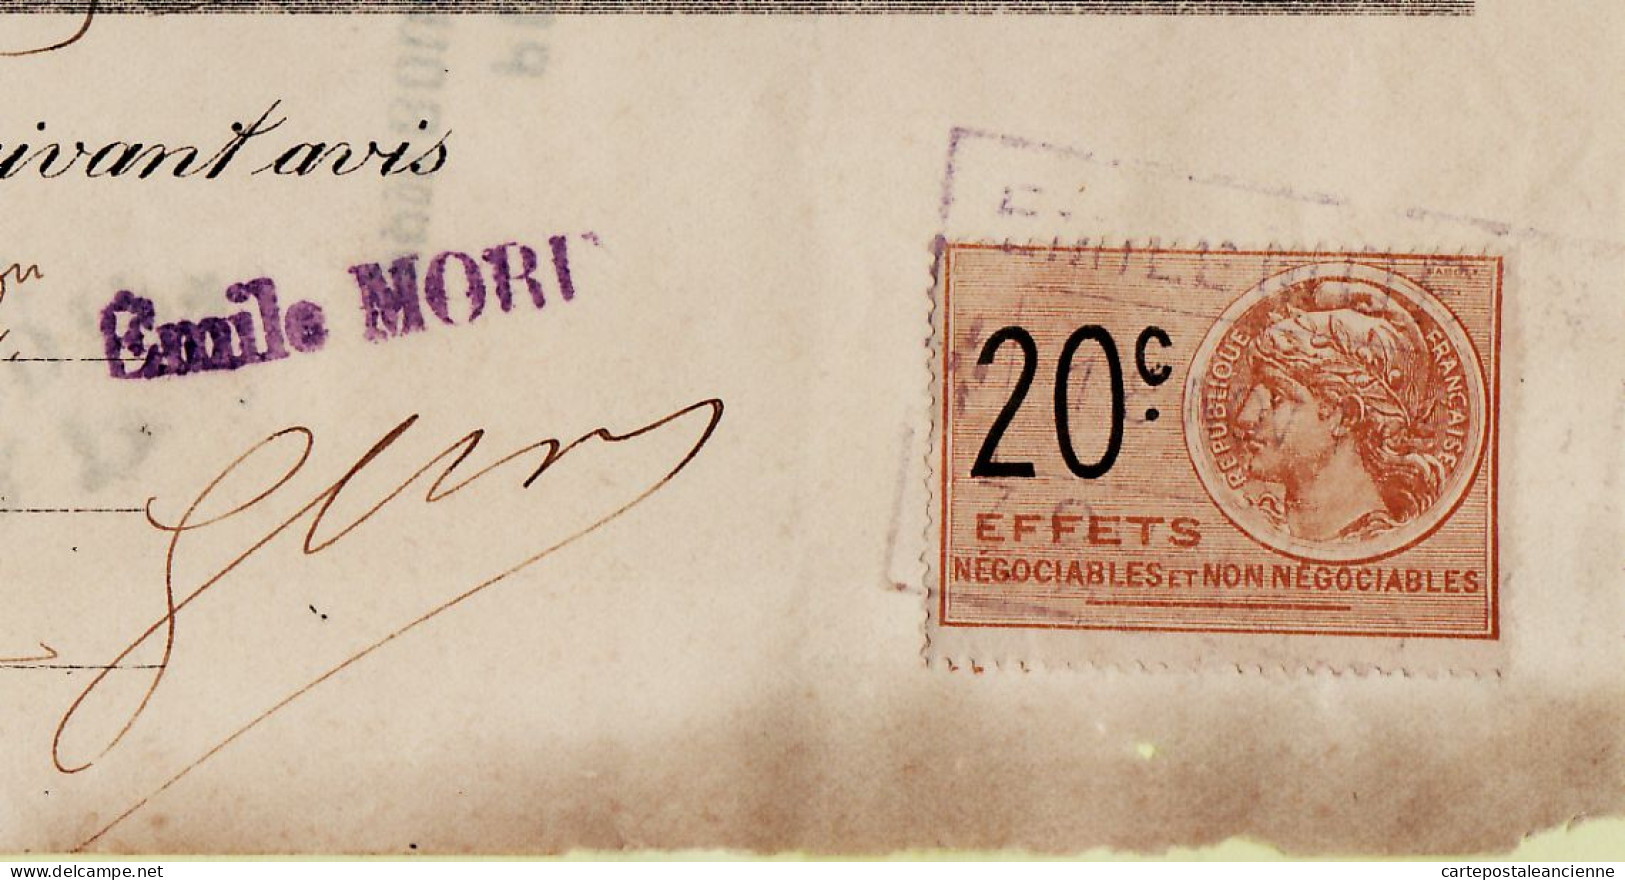 31267 / Carrosserie Armurerie MORIN Angers Lettre De Change 1925 à LUSSON Scierie Varades Timbre Fiscal 20cts - Bills Of Exchange